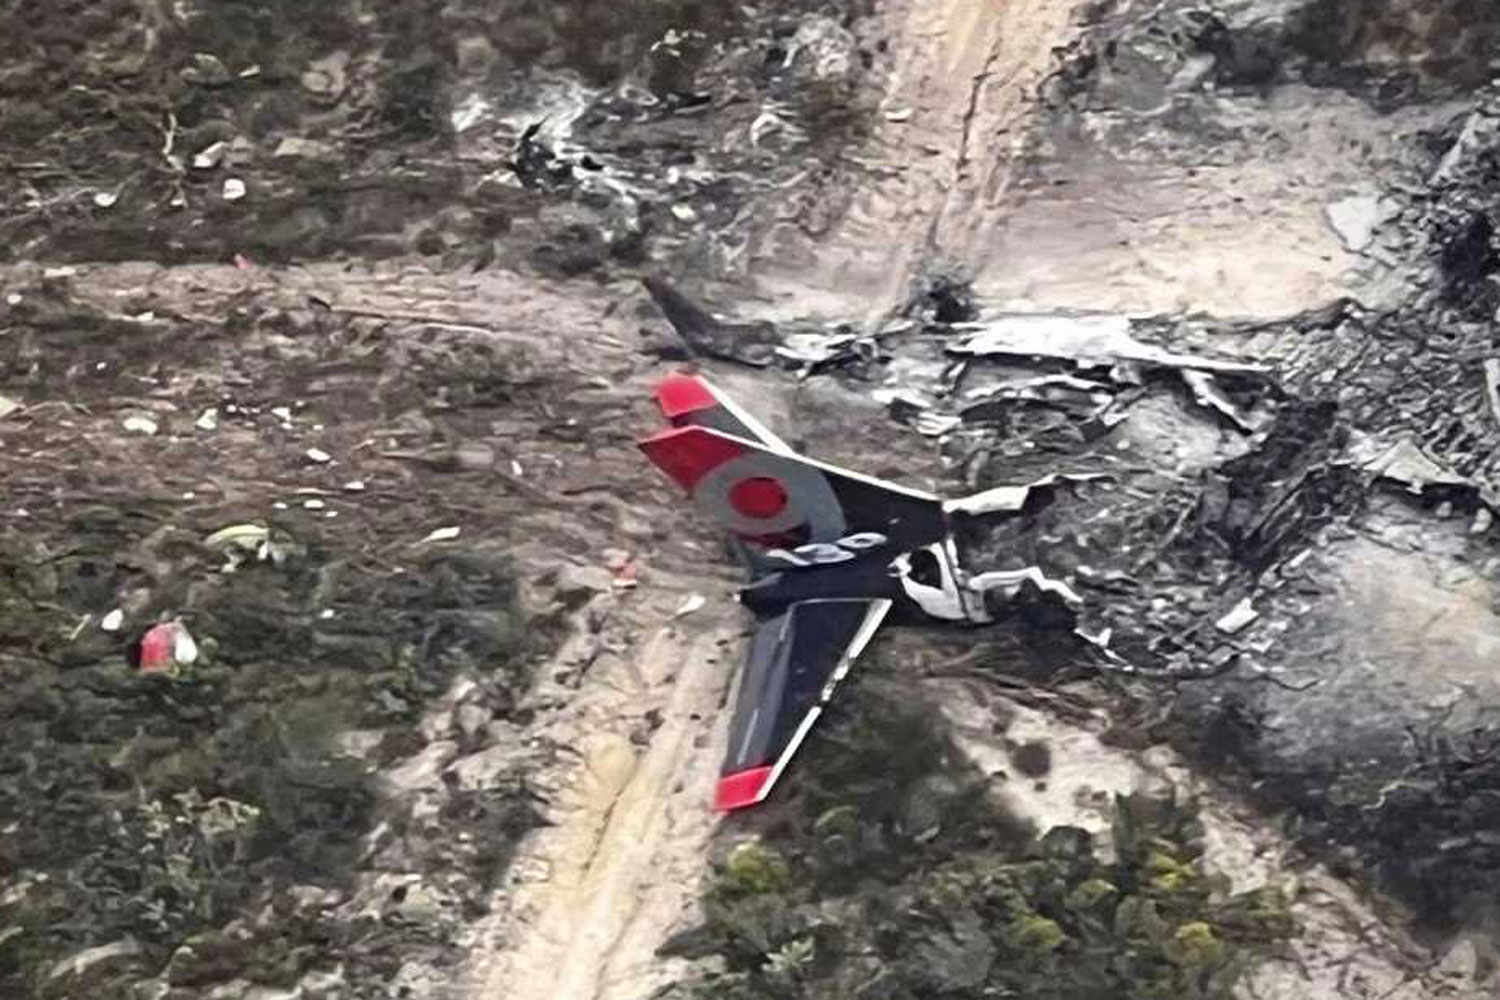 737-crash-firefighter2.jpg